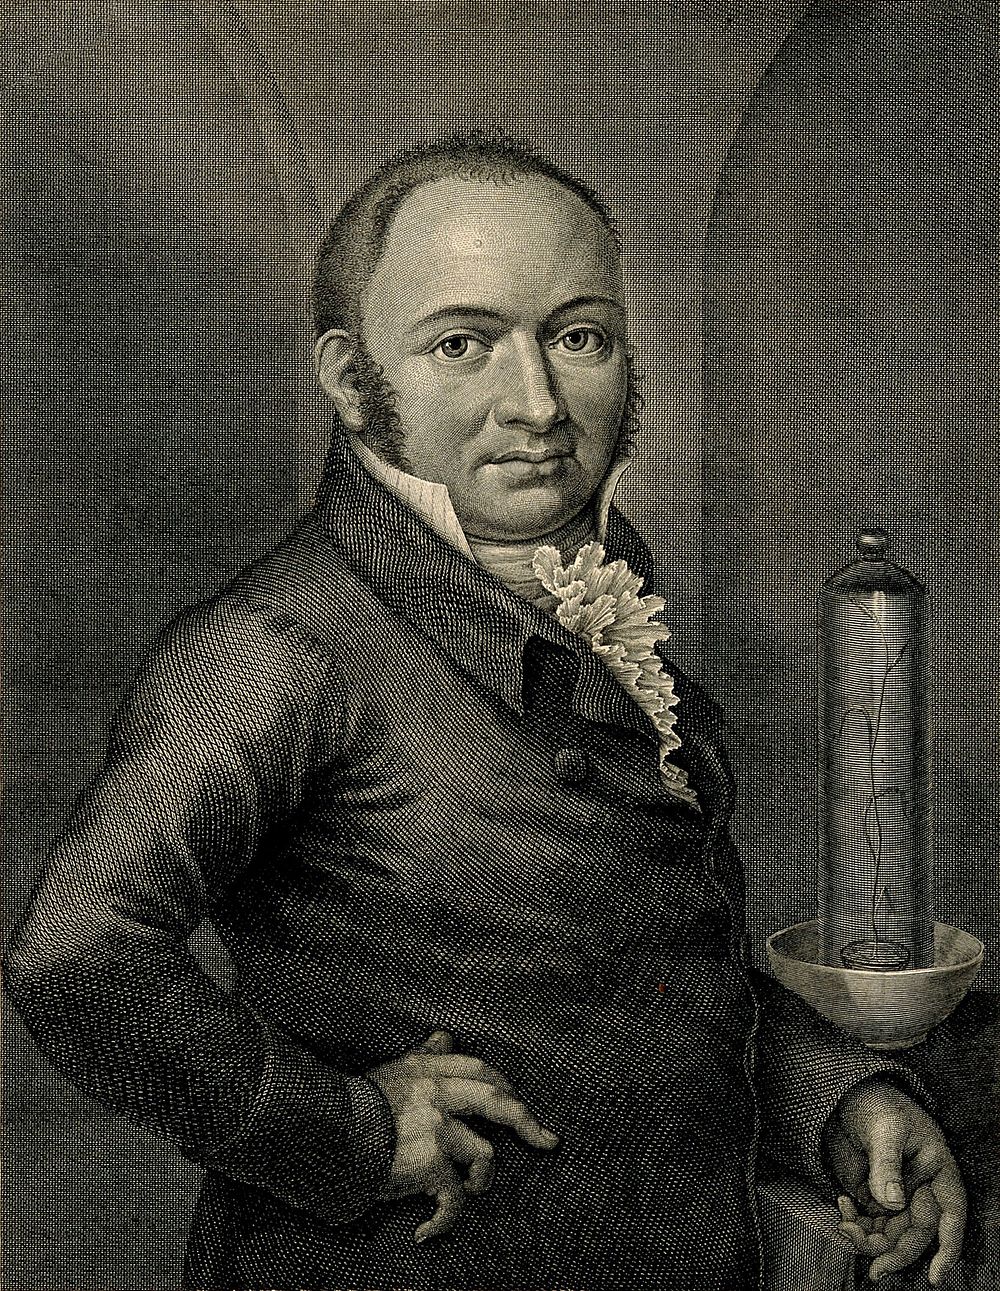 Sigismund Friedrich Hermbstädt. Line engraving by G. A. Lehmann, 1808.